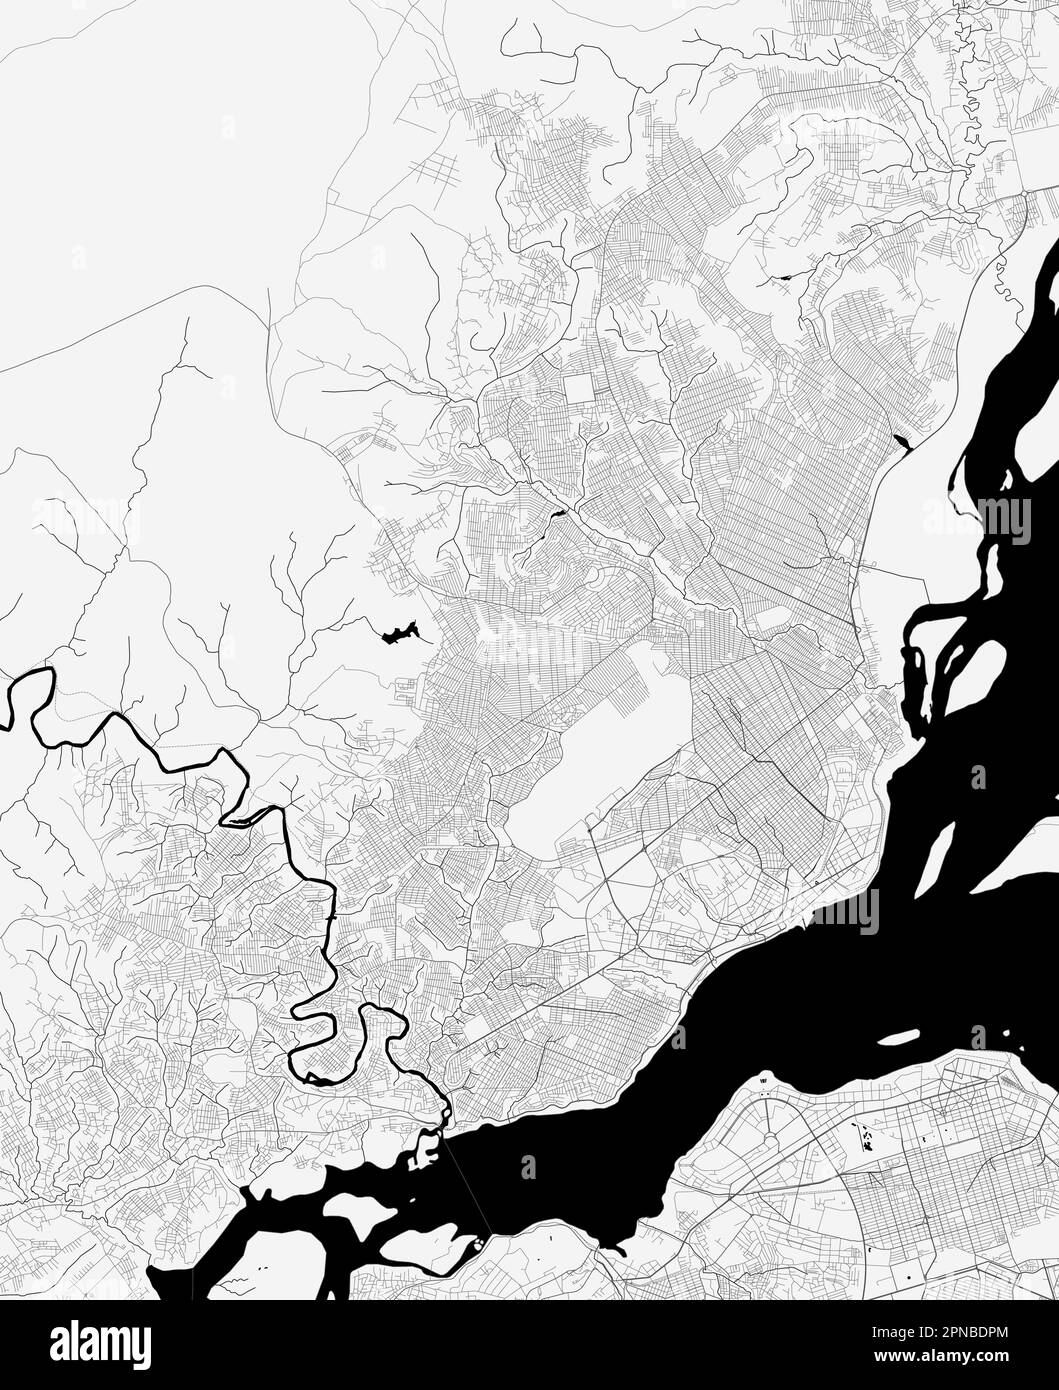 Carte de la ville de Brazzaville, République du Congo. Affiche urbaine noir et blanc. Carte routière avec vue de la région métropolitaine. Illustration de Vecteur